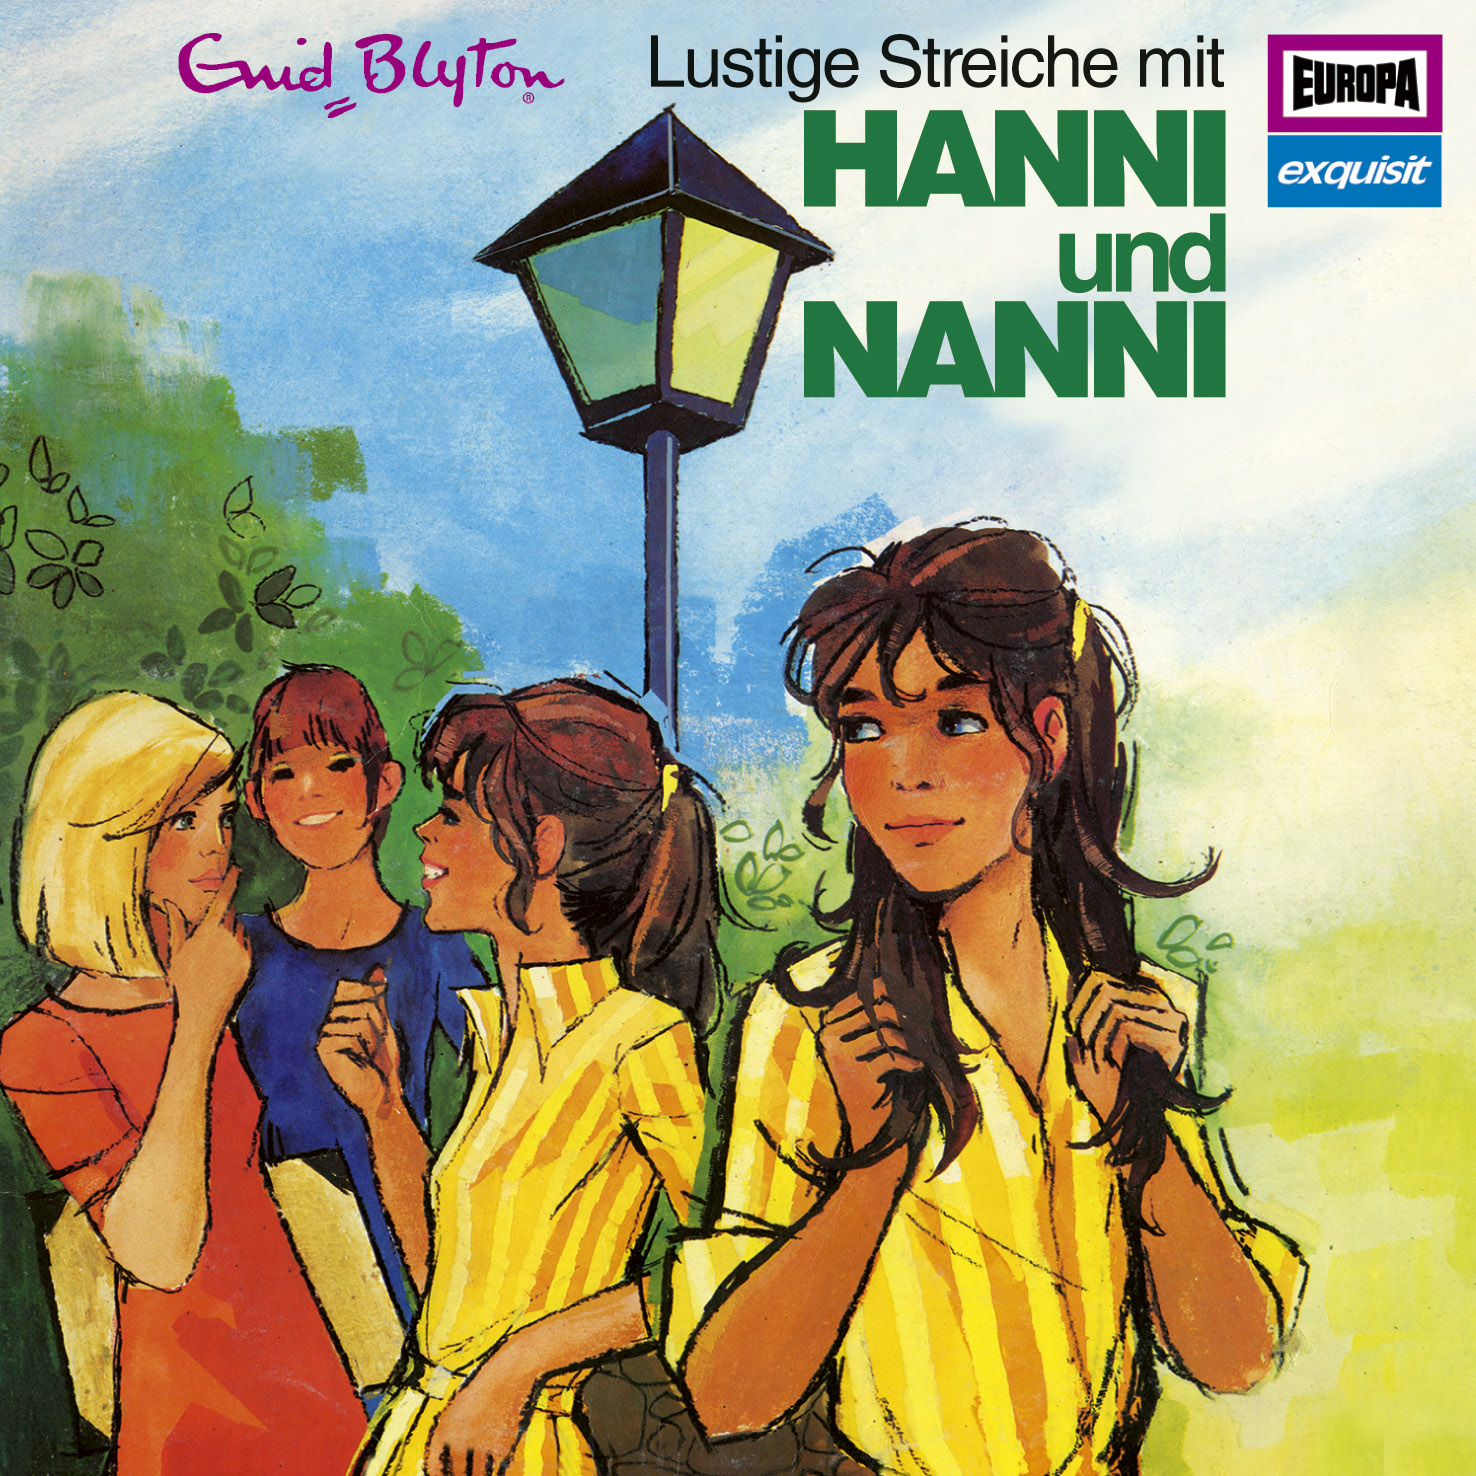 Hanni und Nanni Klassik  - Lustige Streiche mit Hanni und Nanni